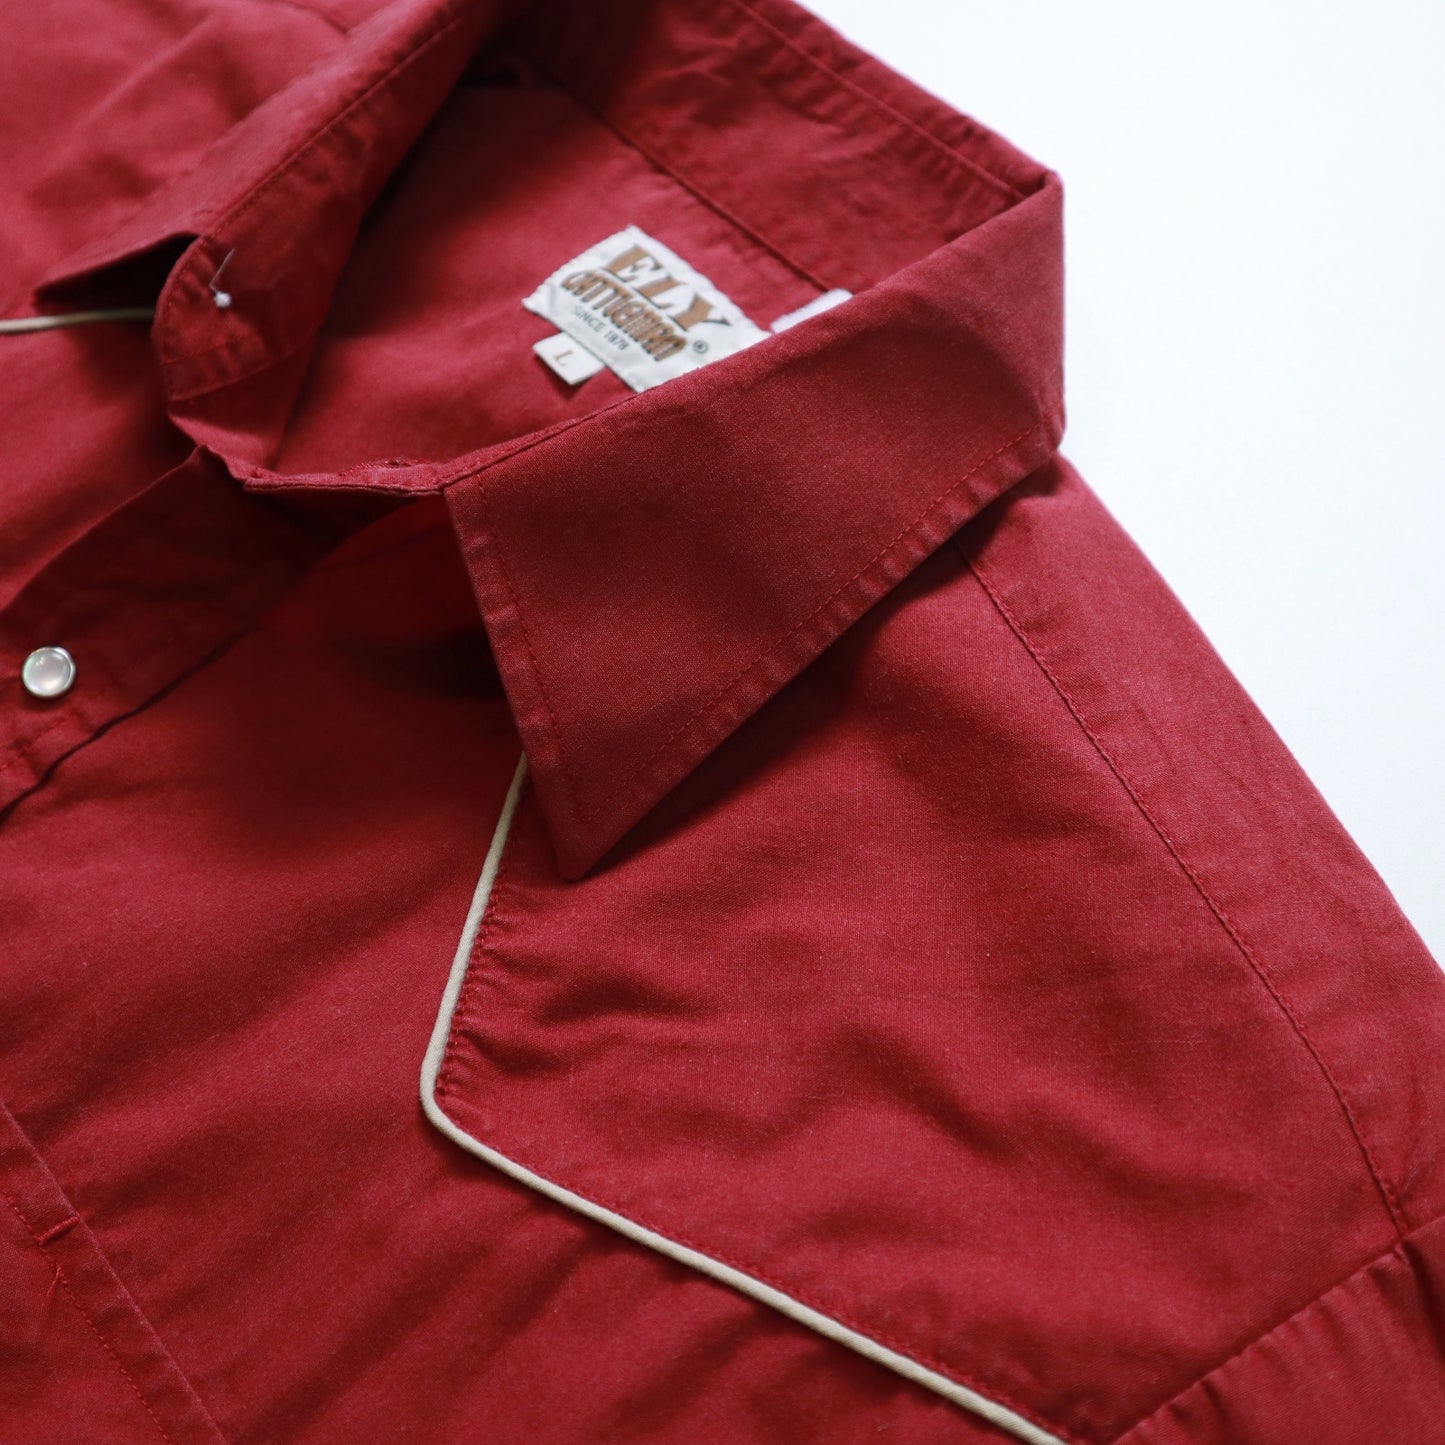 80-90年代 ELY Cattleman Western Shirt 赤無地 ウエスタンシャツ Ranchwear